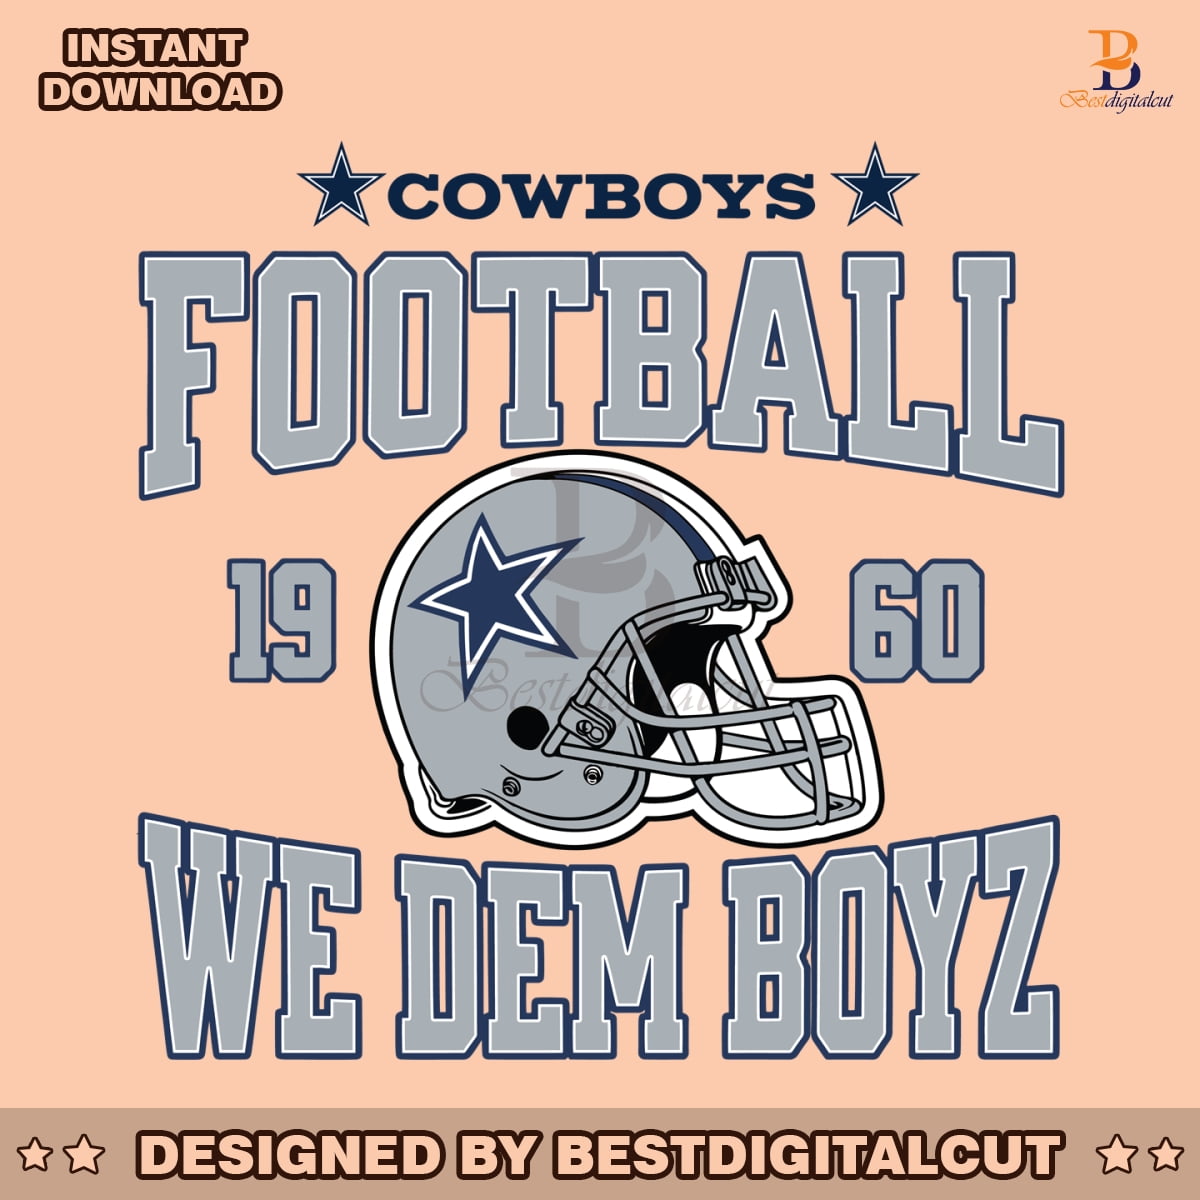 cowboys-football-we-dem-boyz-1960-svg-digital-file